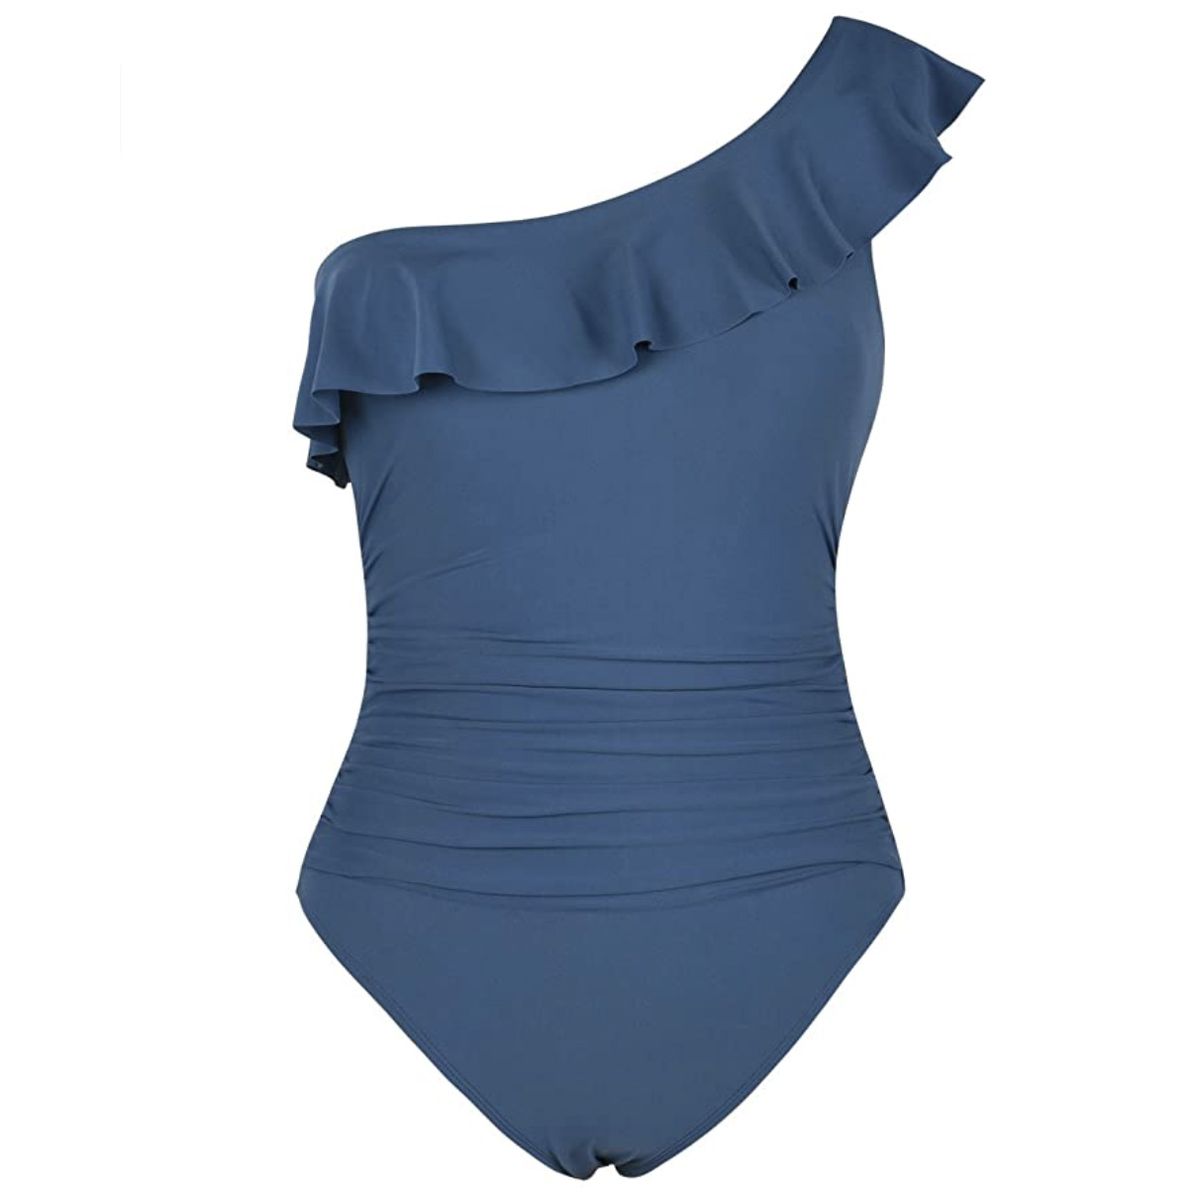 Hilor Women's One-Piece One Shoulder Swimwear